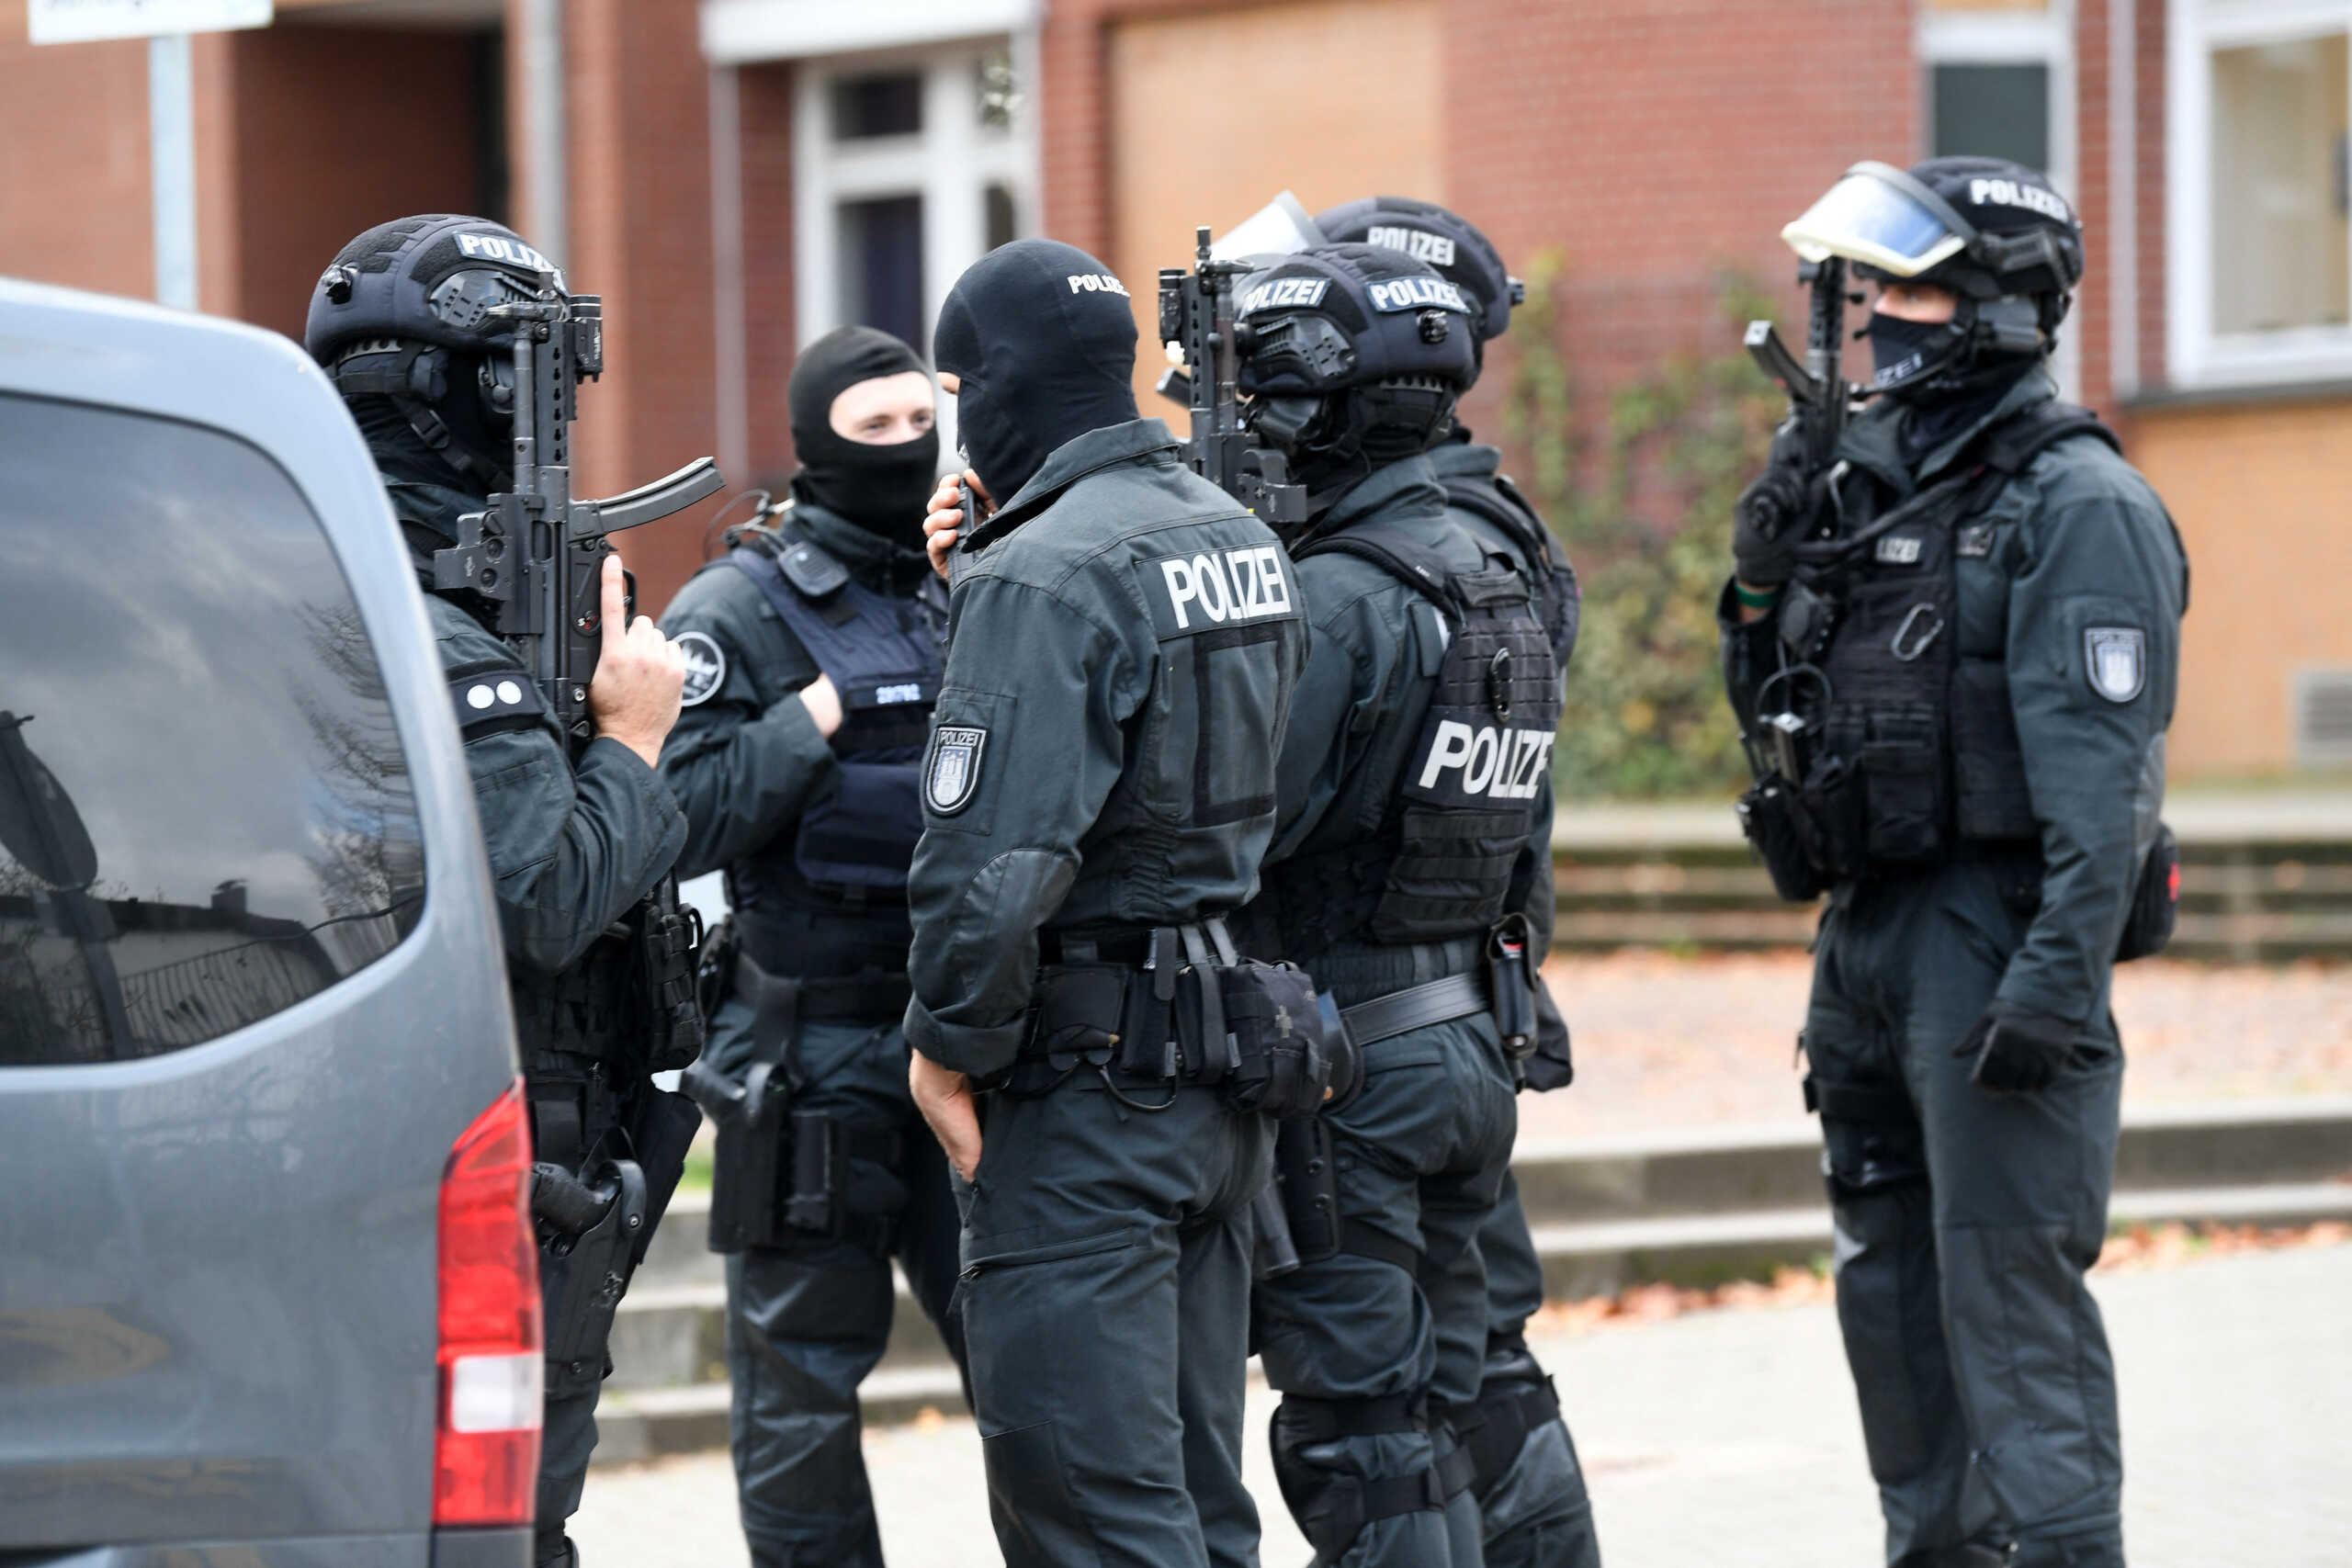 Αμβούργο: Άφαντοι οι ανήλικοι που μπούκαραν με όπλο στο σχολείο – Εγκαταλείπουν τον χώρο 1.150 μαθητές